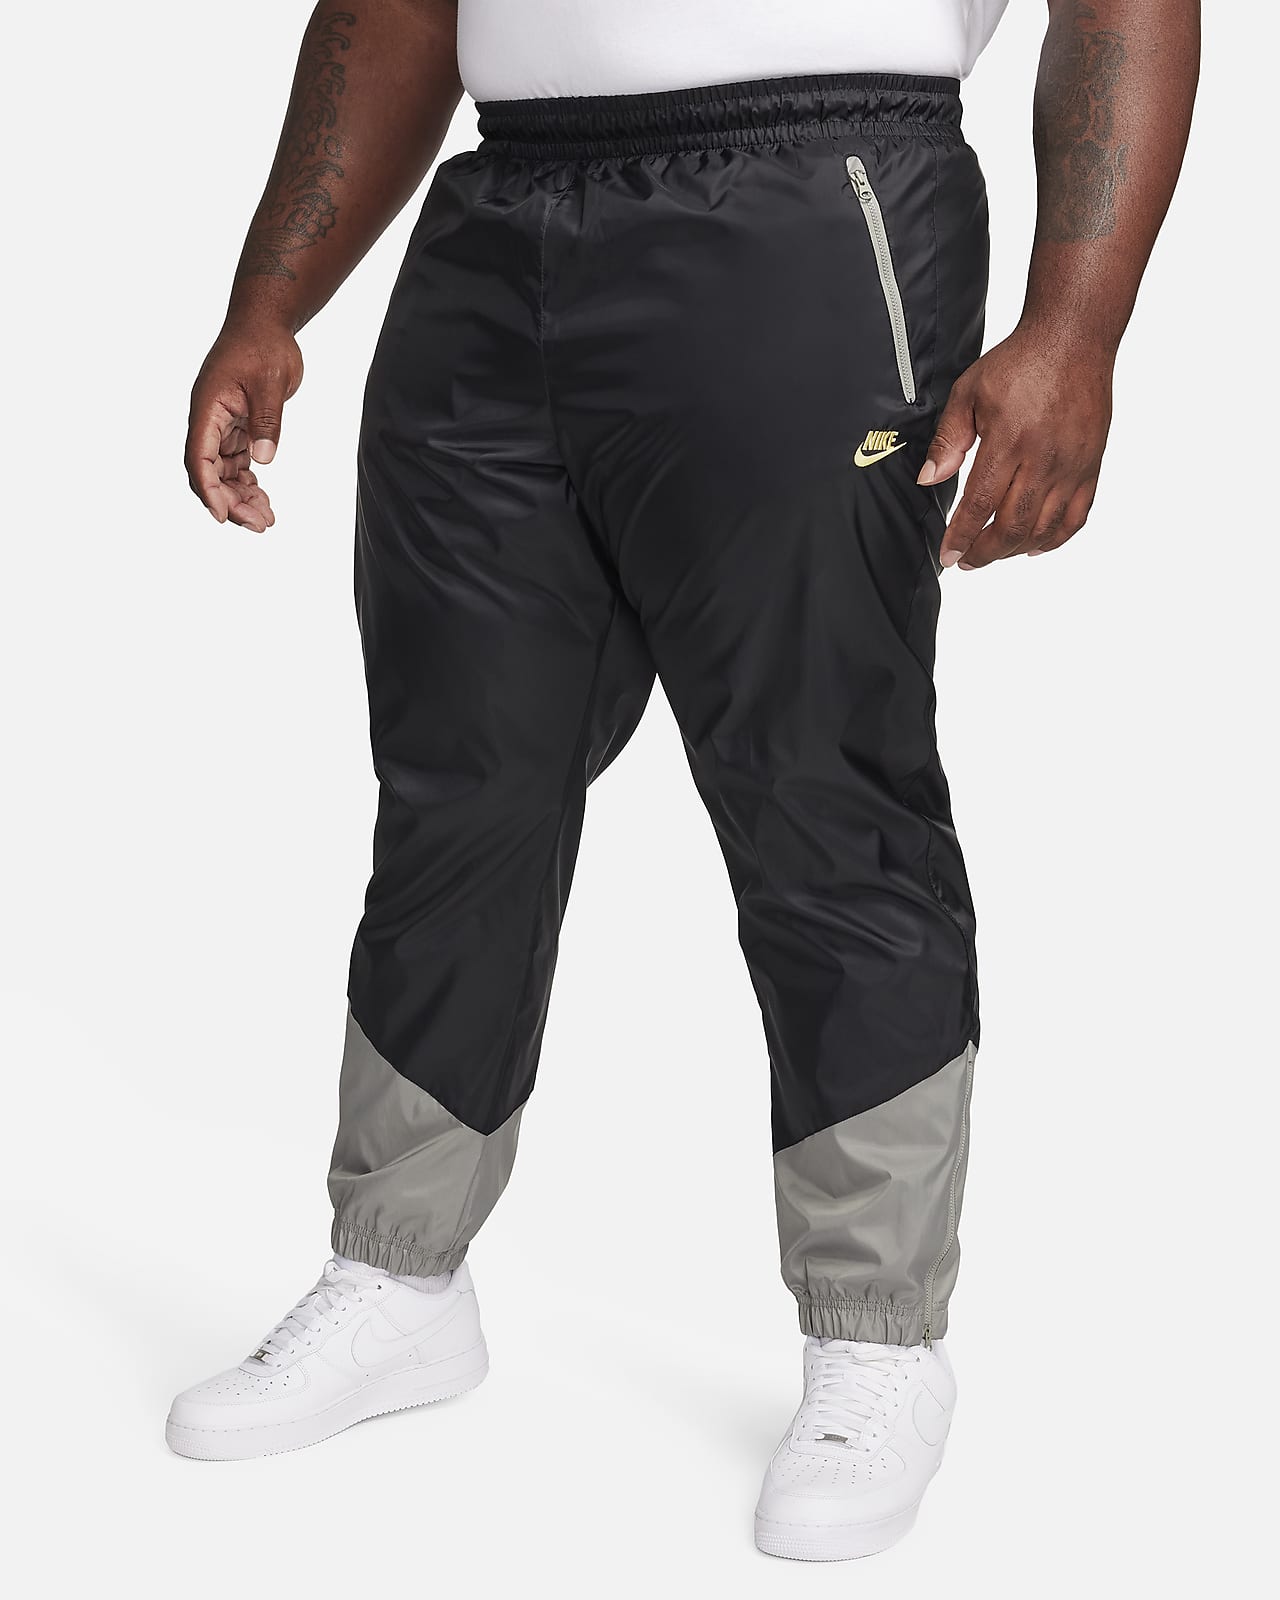 Nike Windrunner Men's Woven Lined Pants.